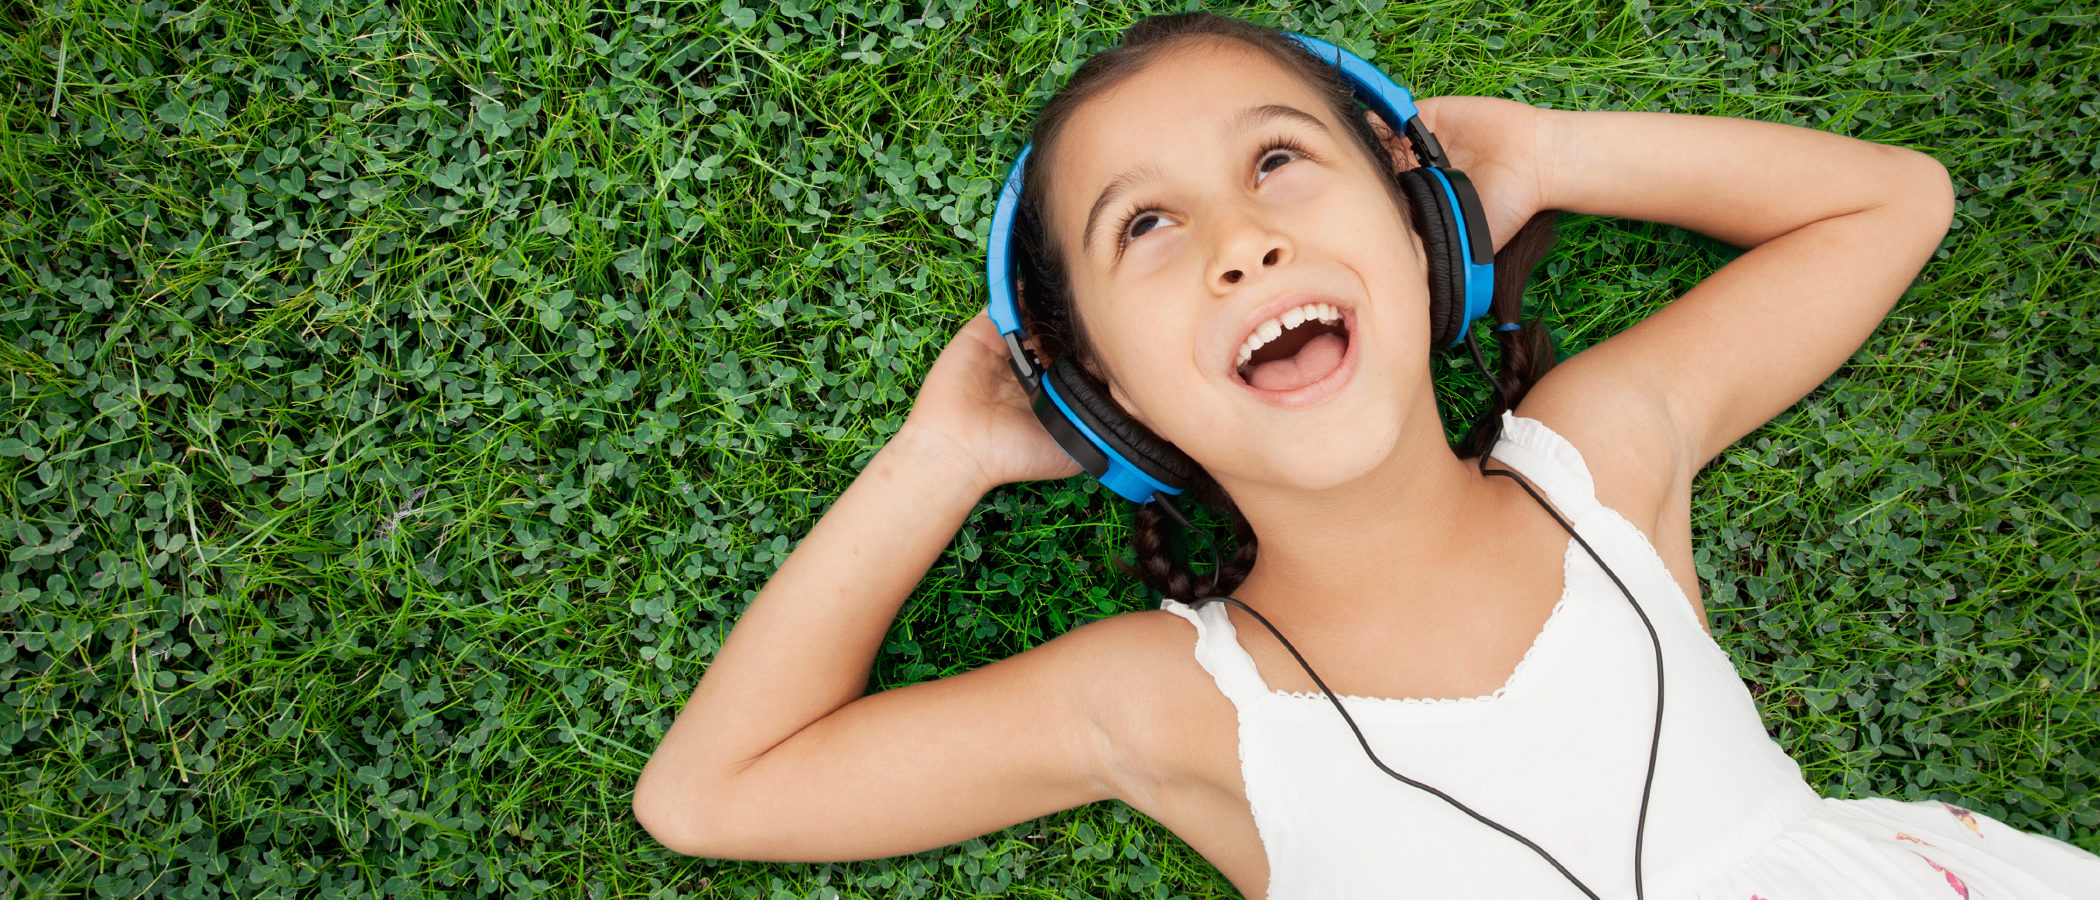 Audiolibros para niños, 6 razones para problarlos